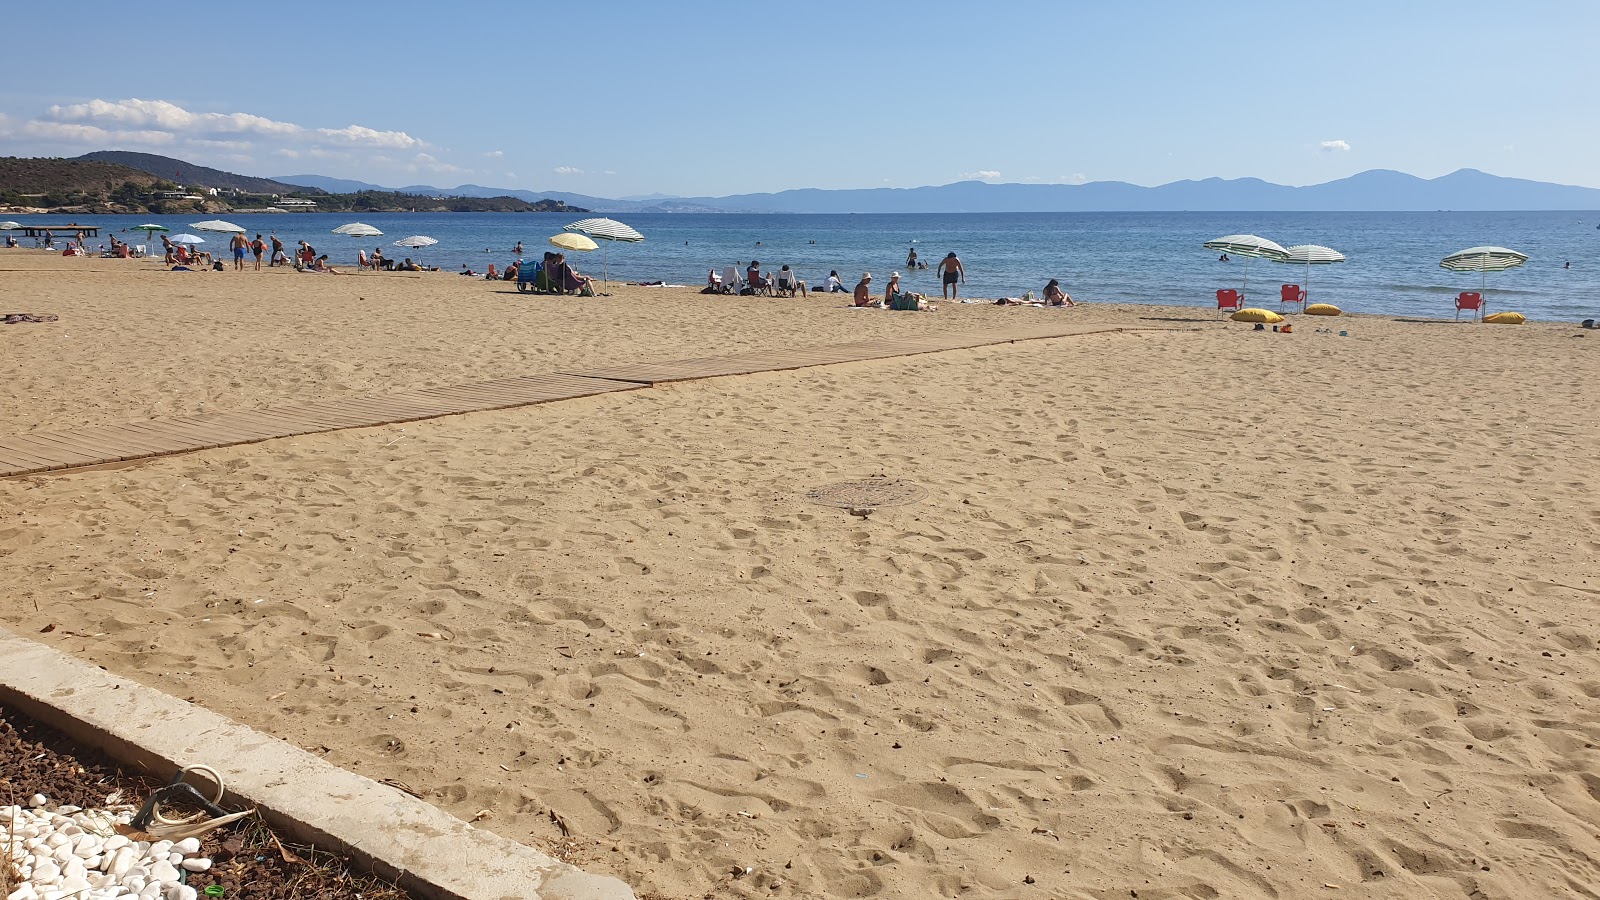 Fotografija CukuraltI beach priljubljeno mesto med poznavalci sprostitve